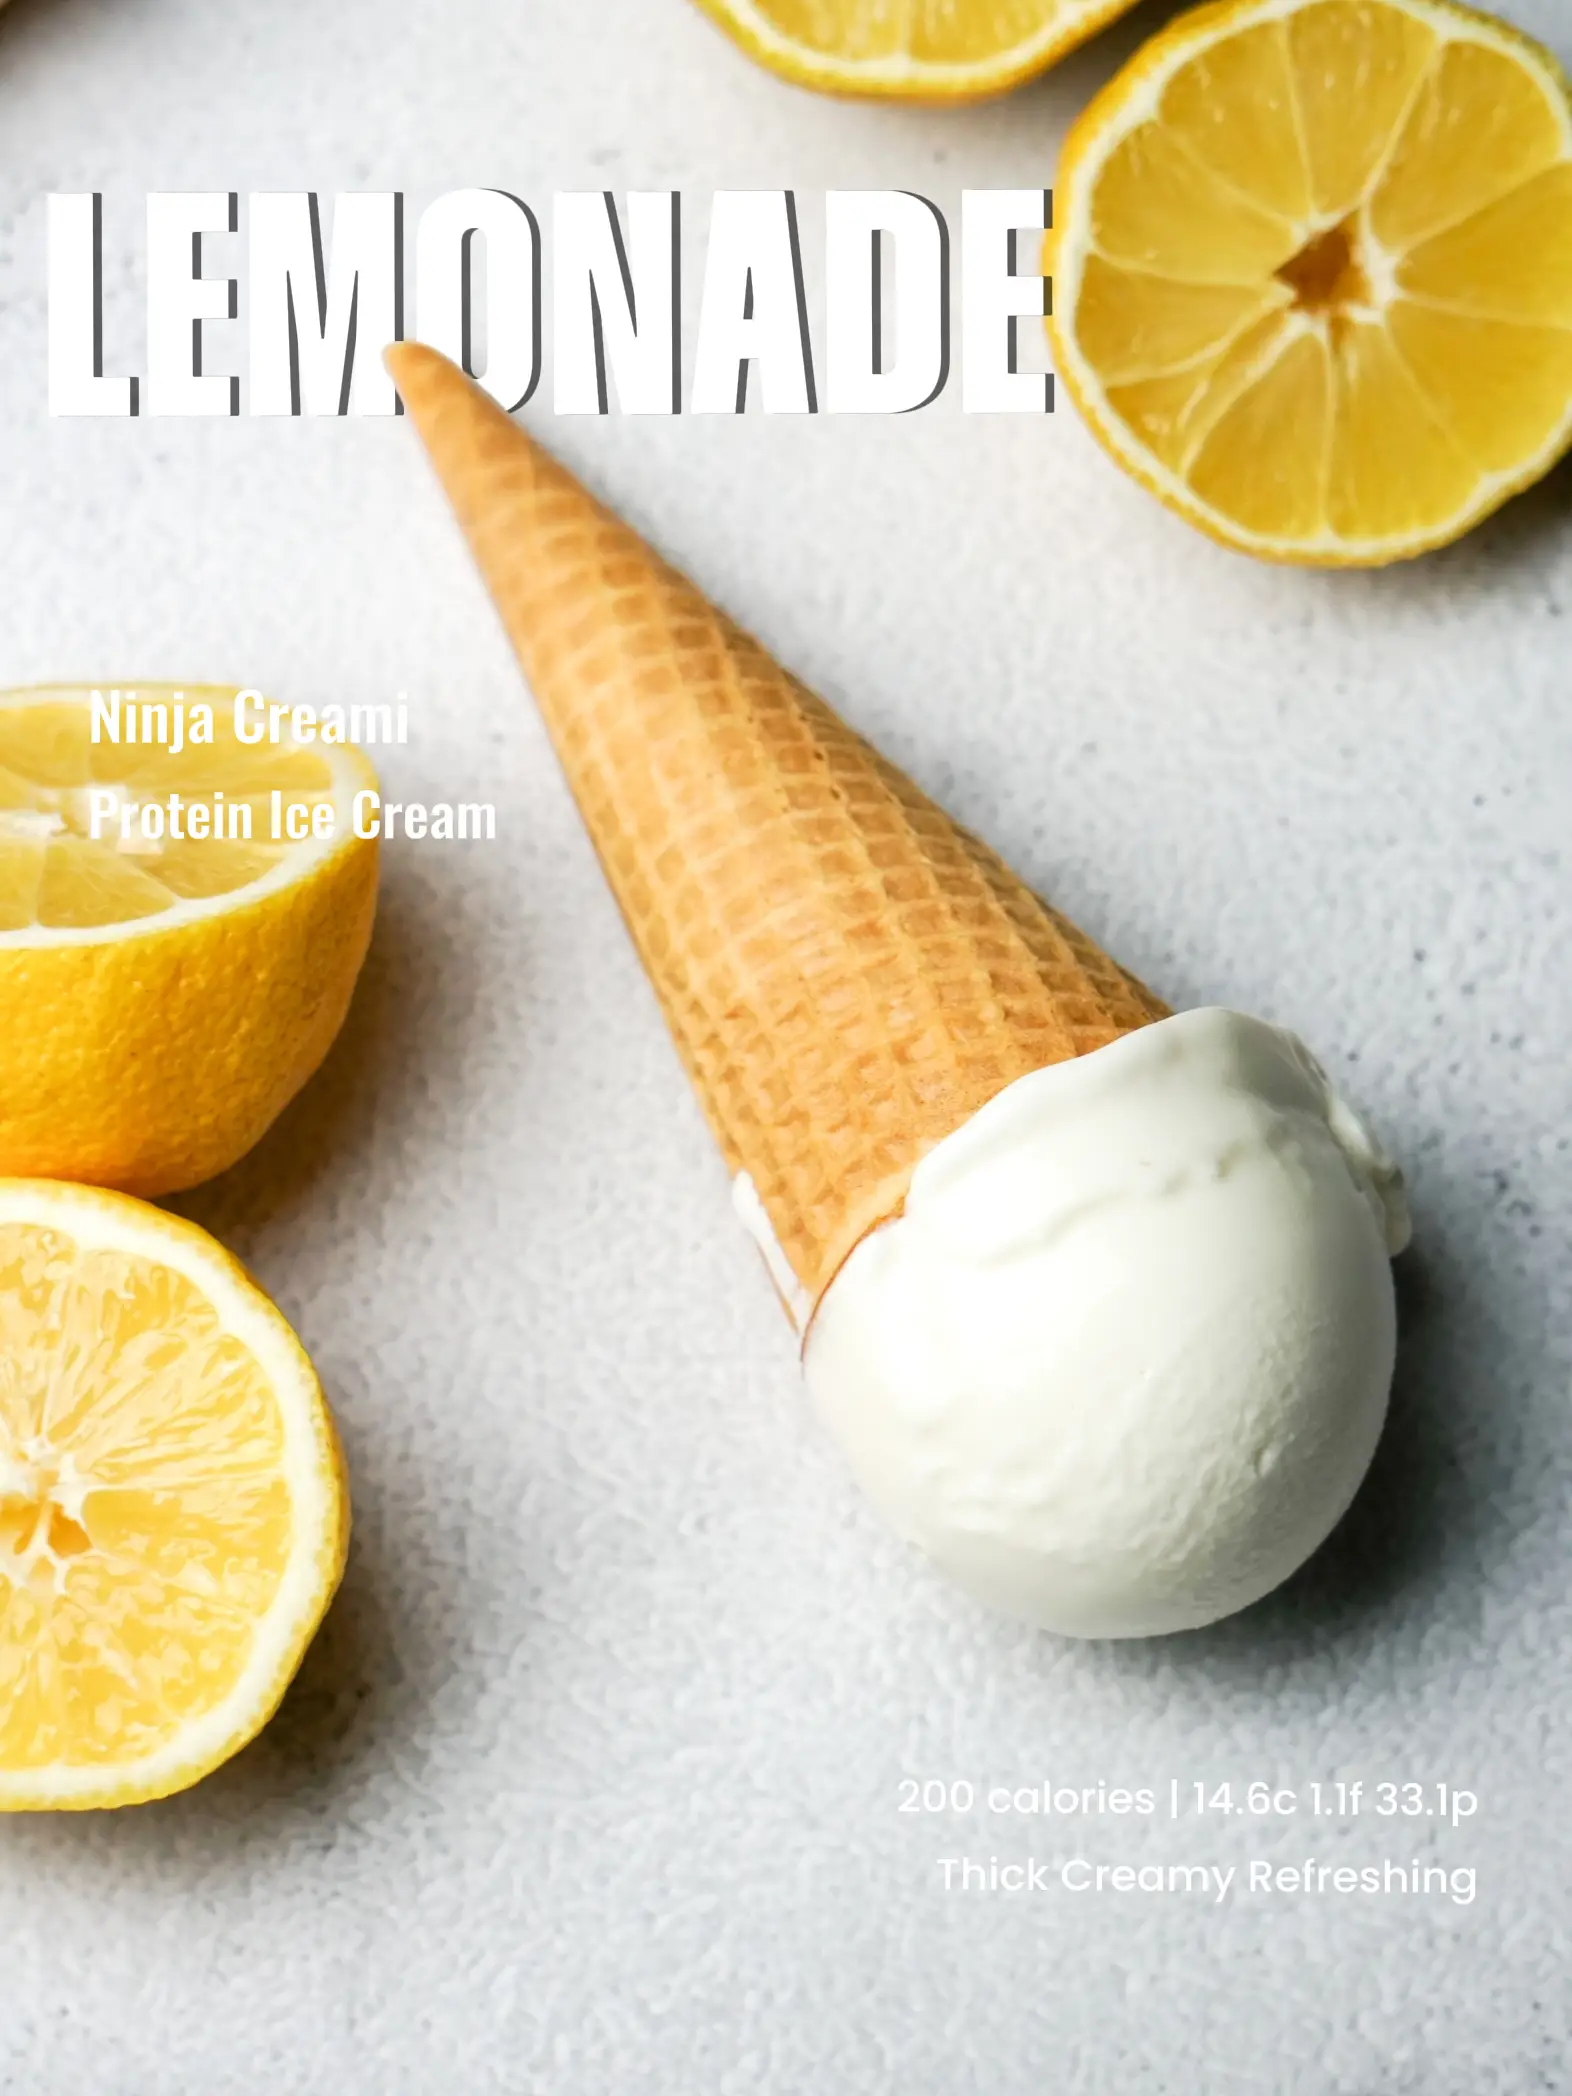 Ninja Creami Lemon Sorbet (So Refreshing!) - The Top Meal